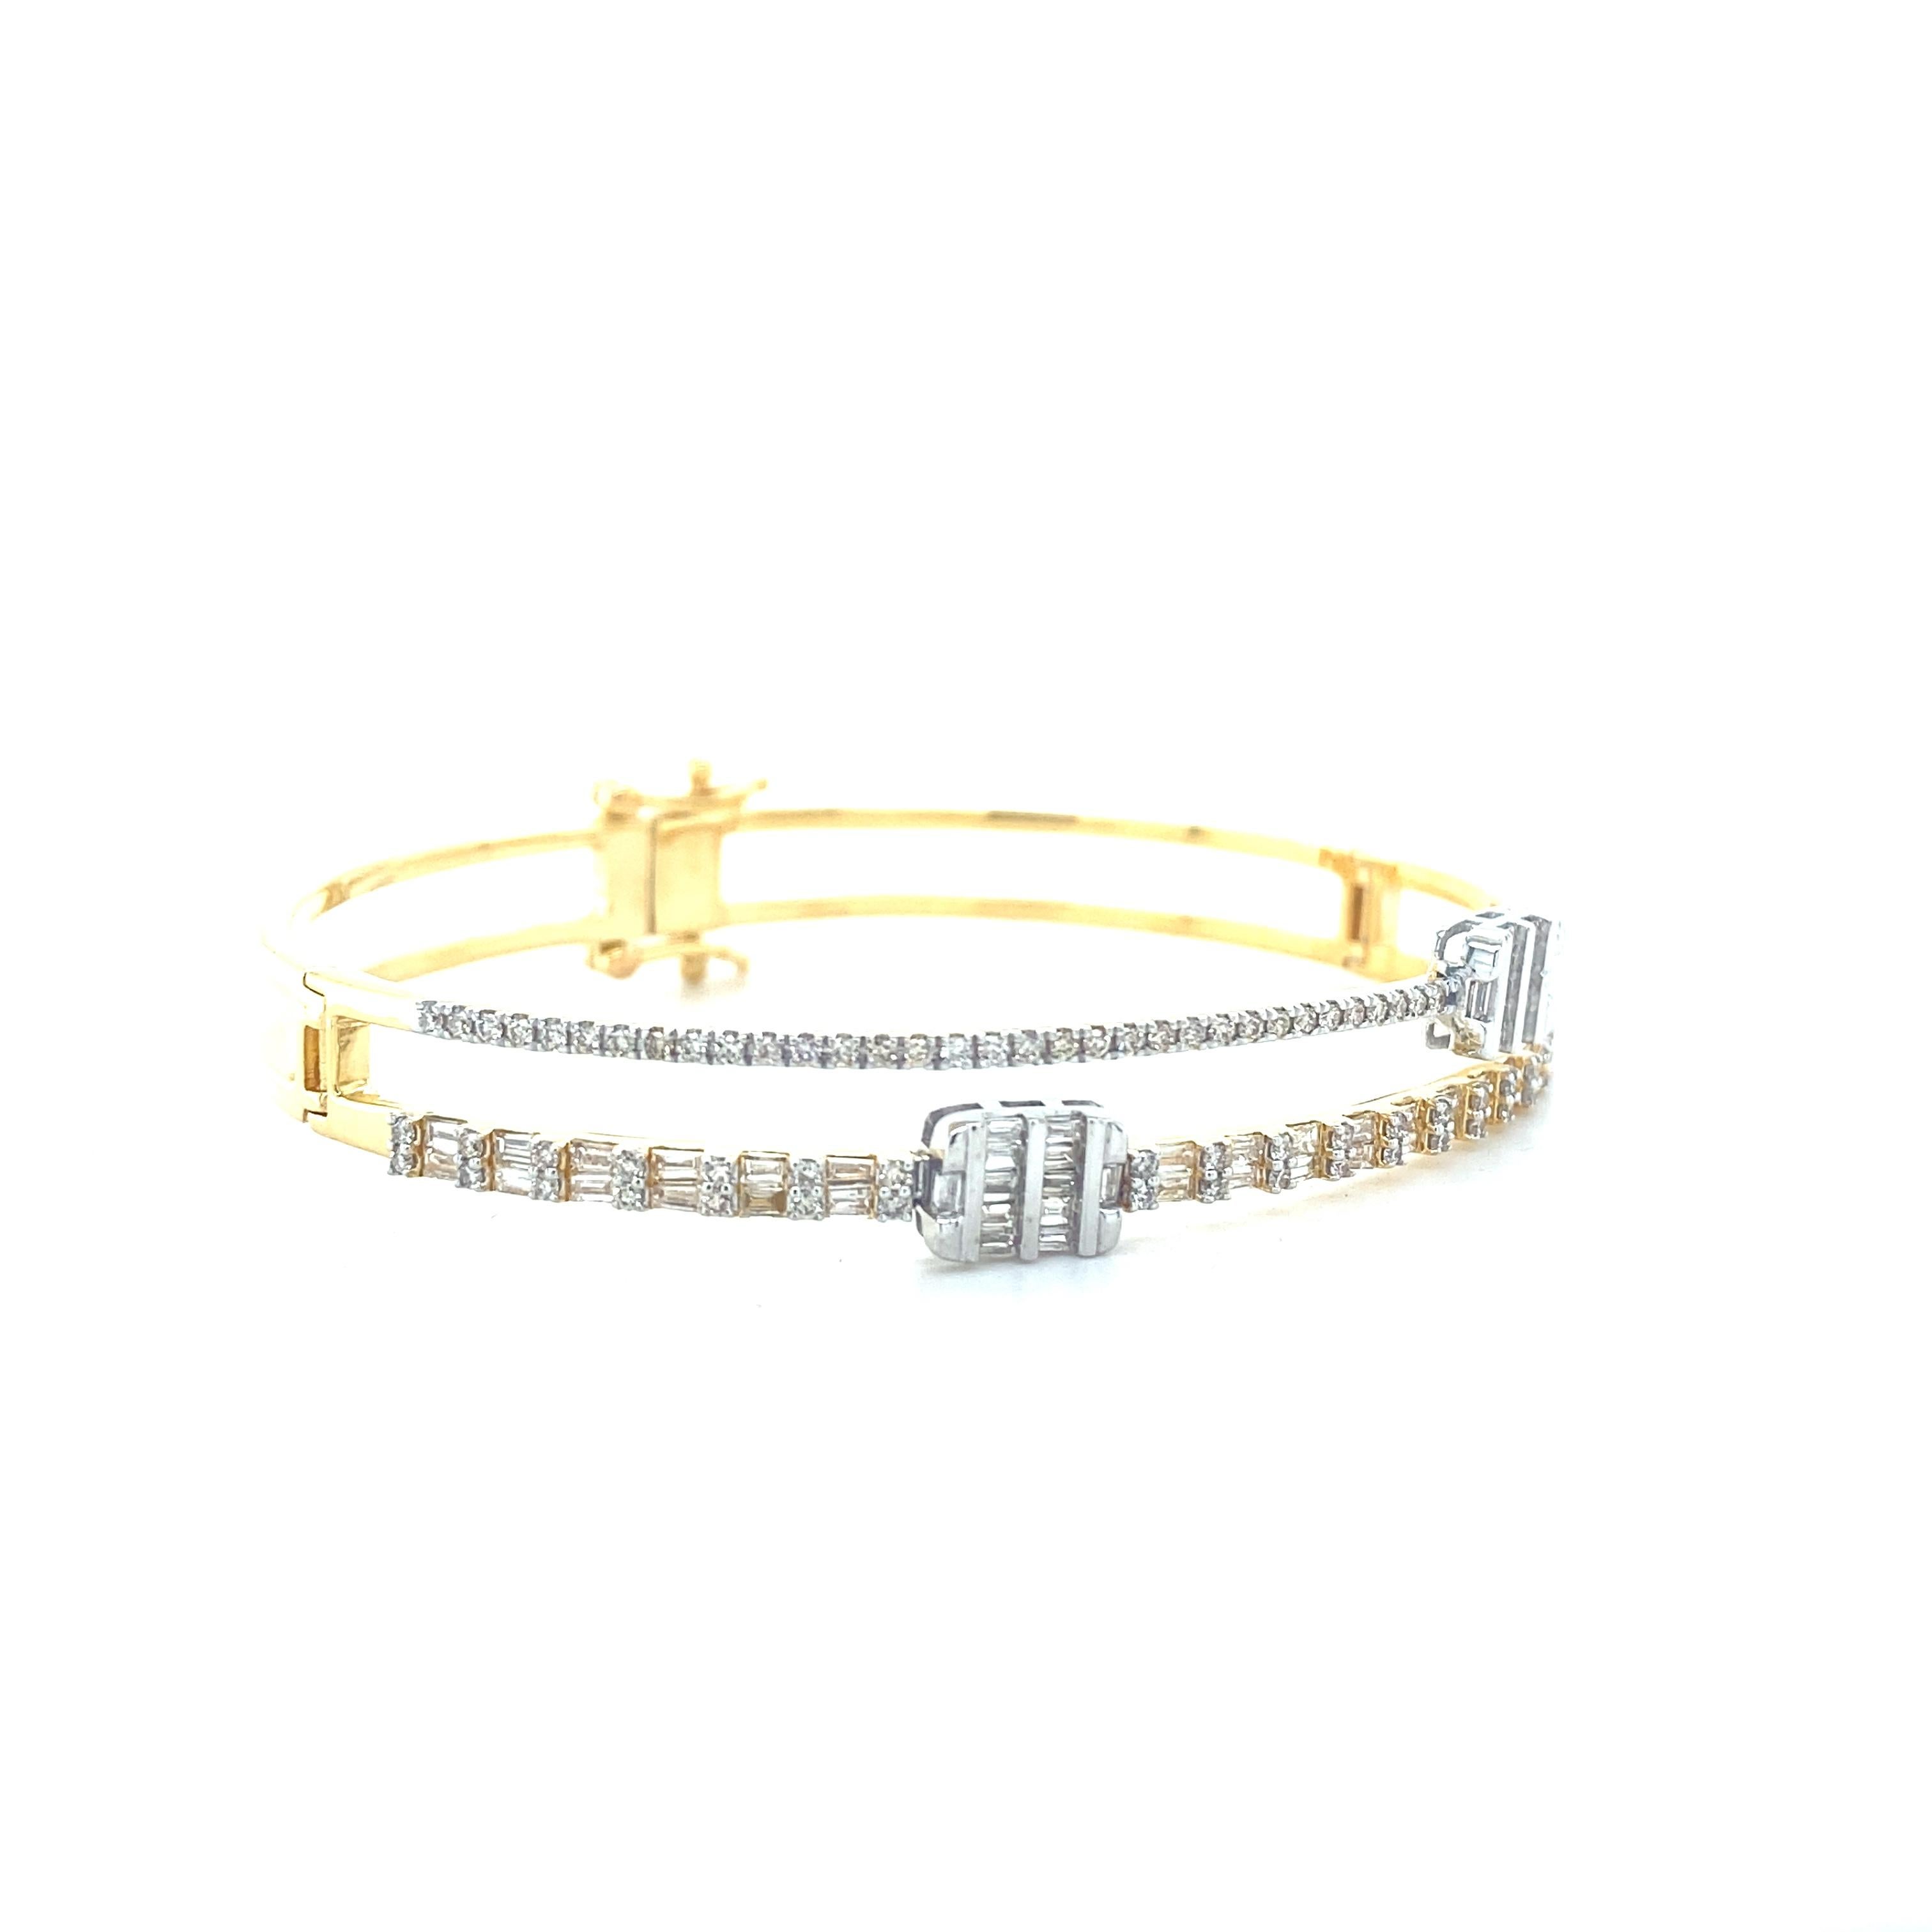 
Dieses exquisite Armband ist ein wahres Zeugnis für Luxus und Eleganz. Er ist aus massivem 18-karätigem Gold gefertigt und besticht durch sein zweizeiliges Design, das eine harmonische Mischung aus Baguette- und runden Diamanten präsentiert. Die